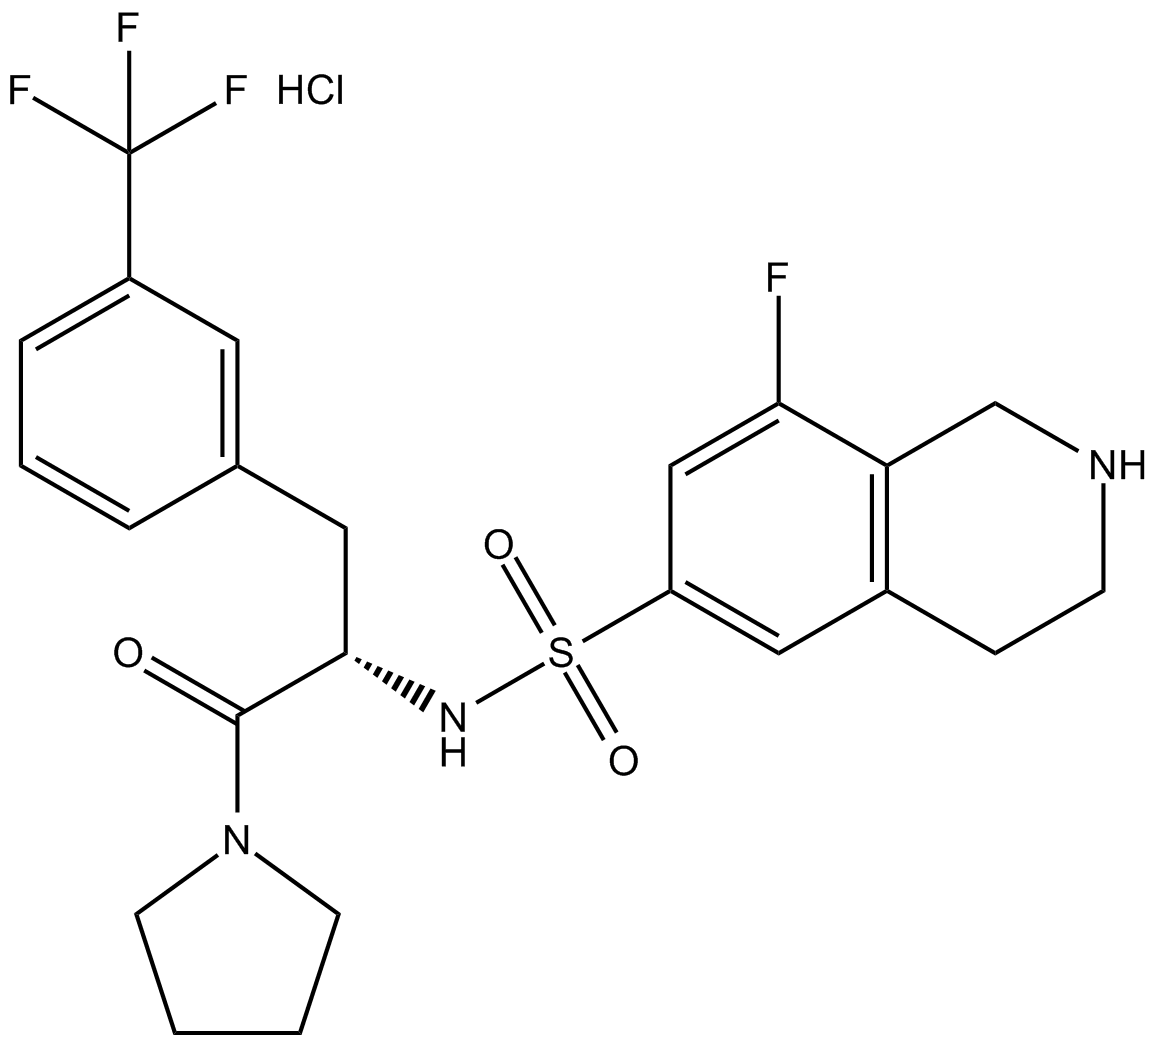 (S)-PFI-2 (hydrochloride)